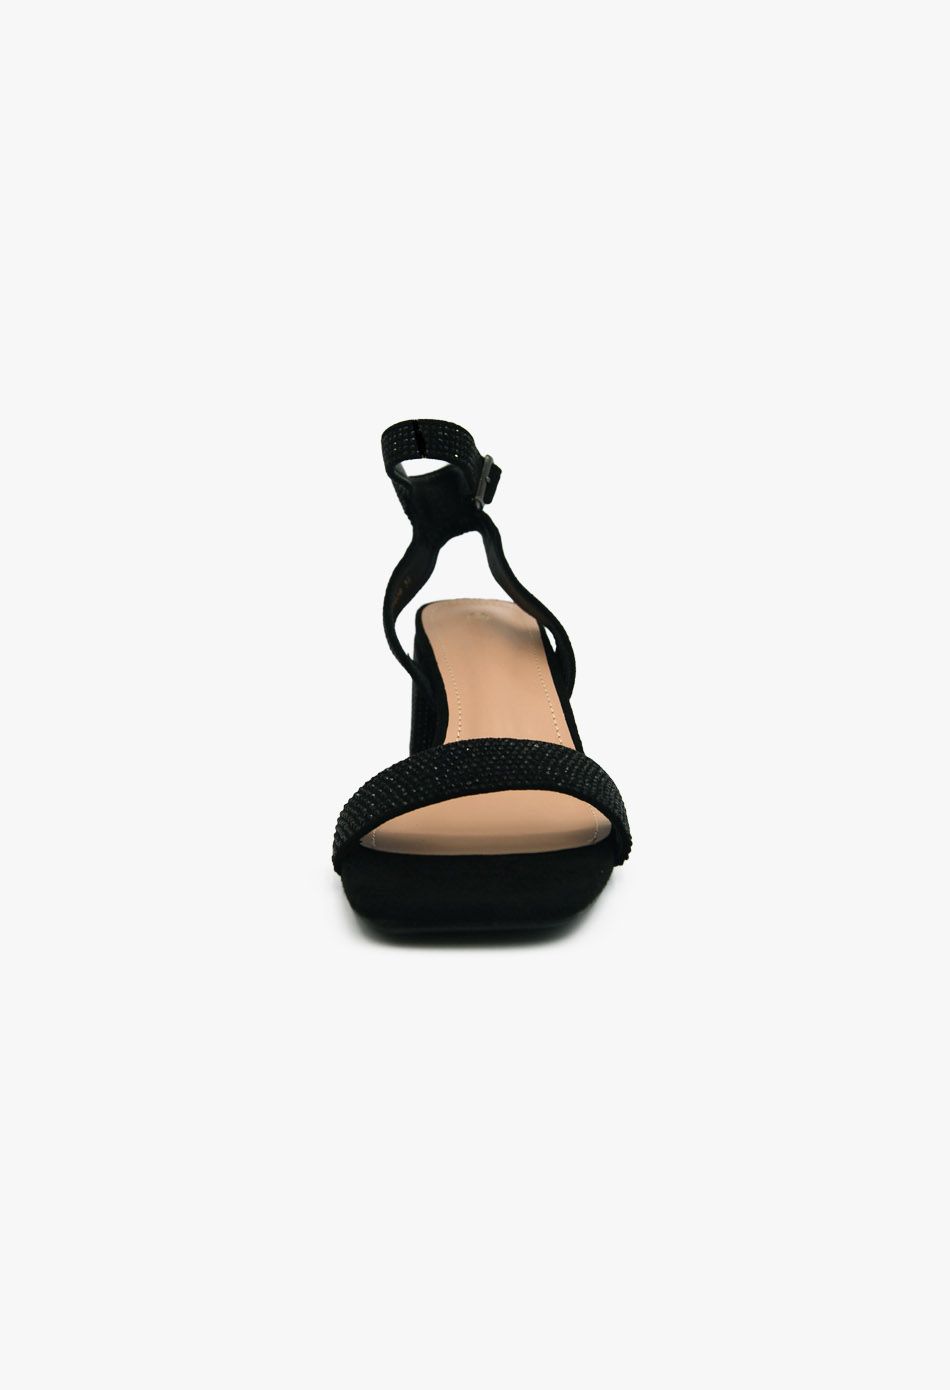 Γυναικεία Πέδιλα με Στρασ και Χοντρό Χαμηλό Τακούνι Μαύρο / F1606-black Ανοιχτά Παπούτσια joya.gr